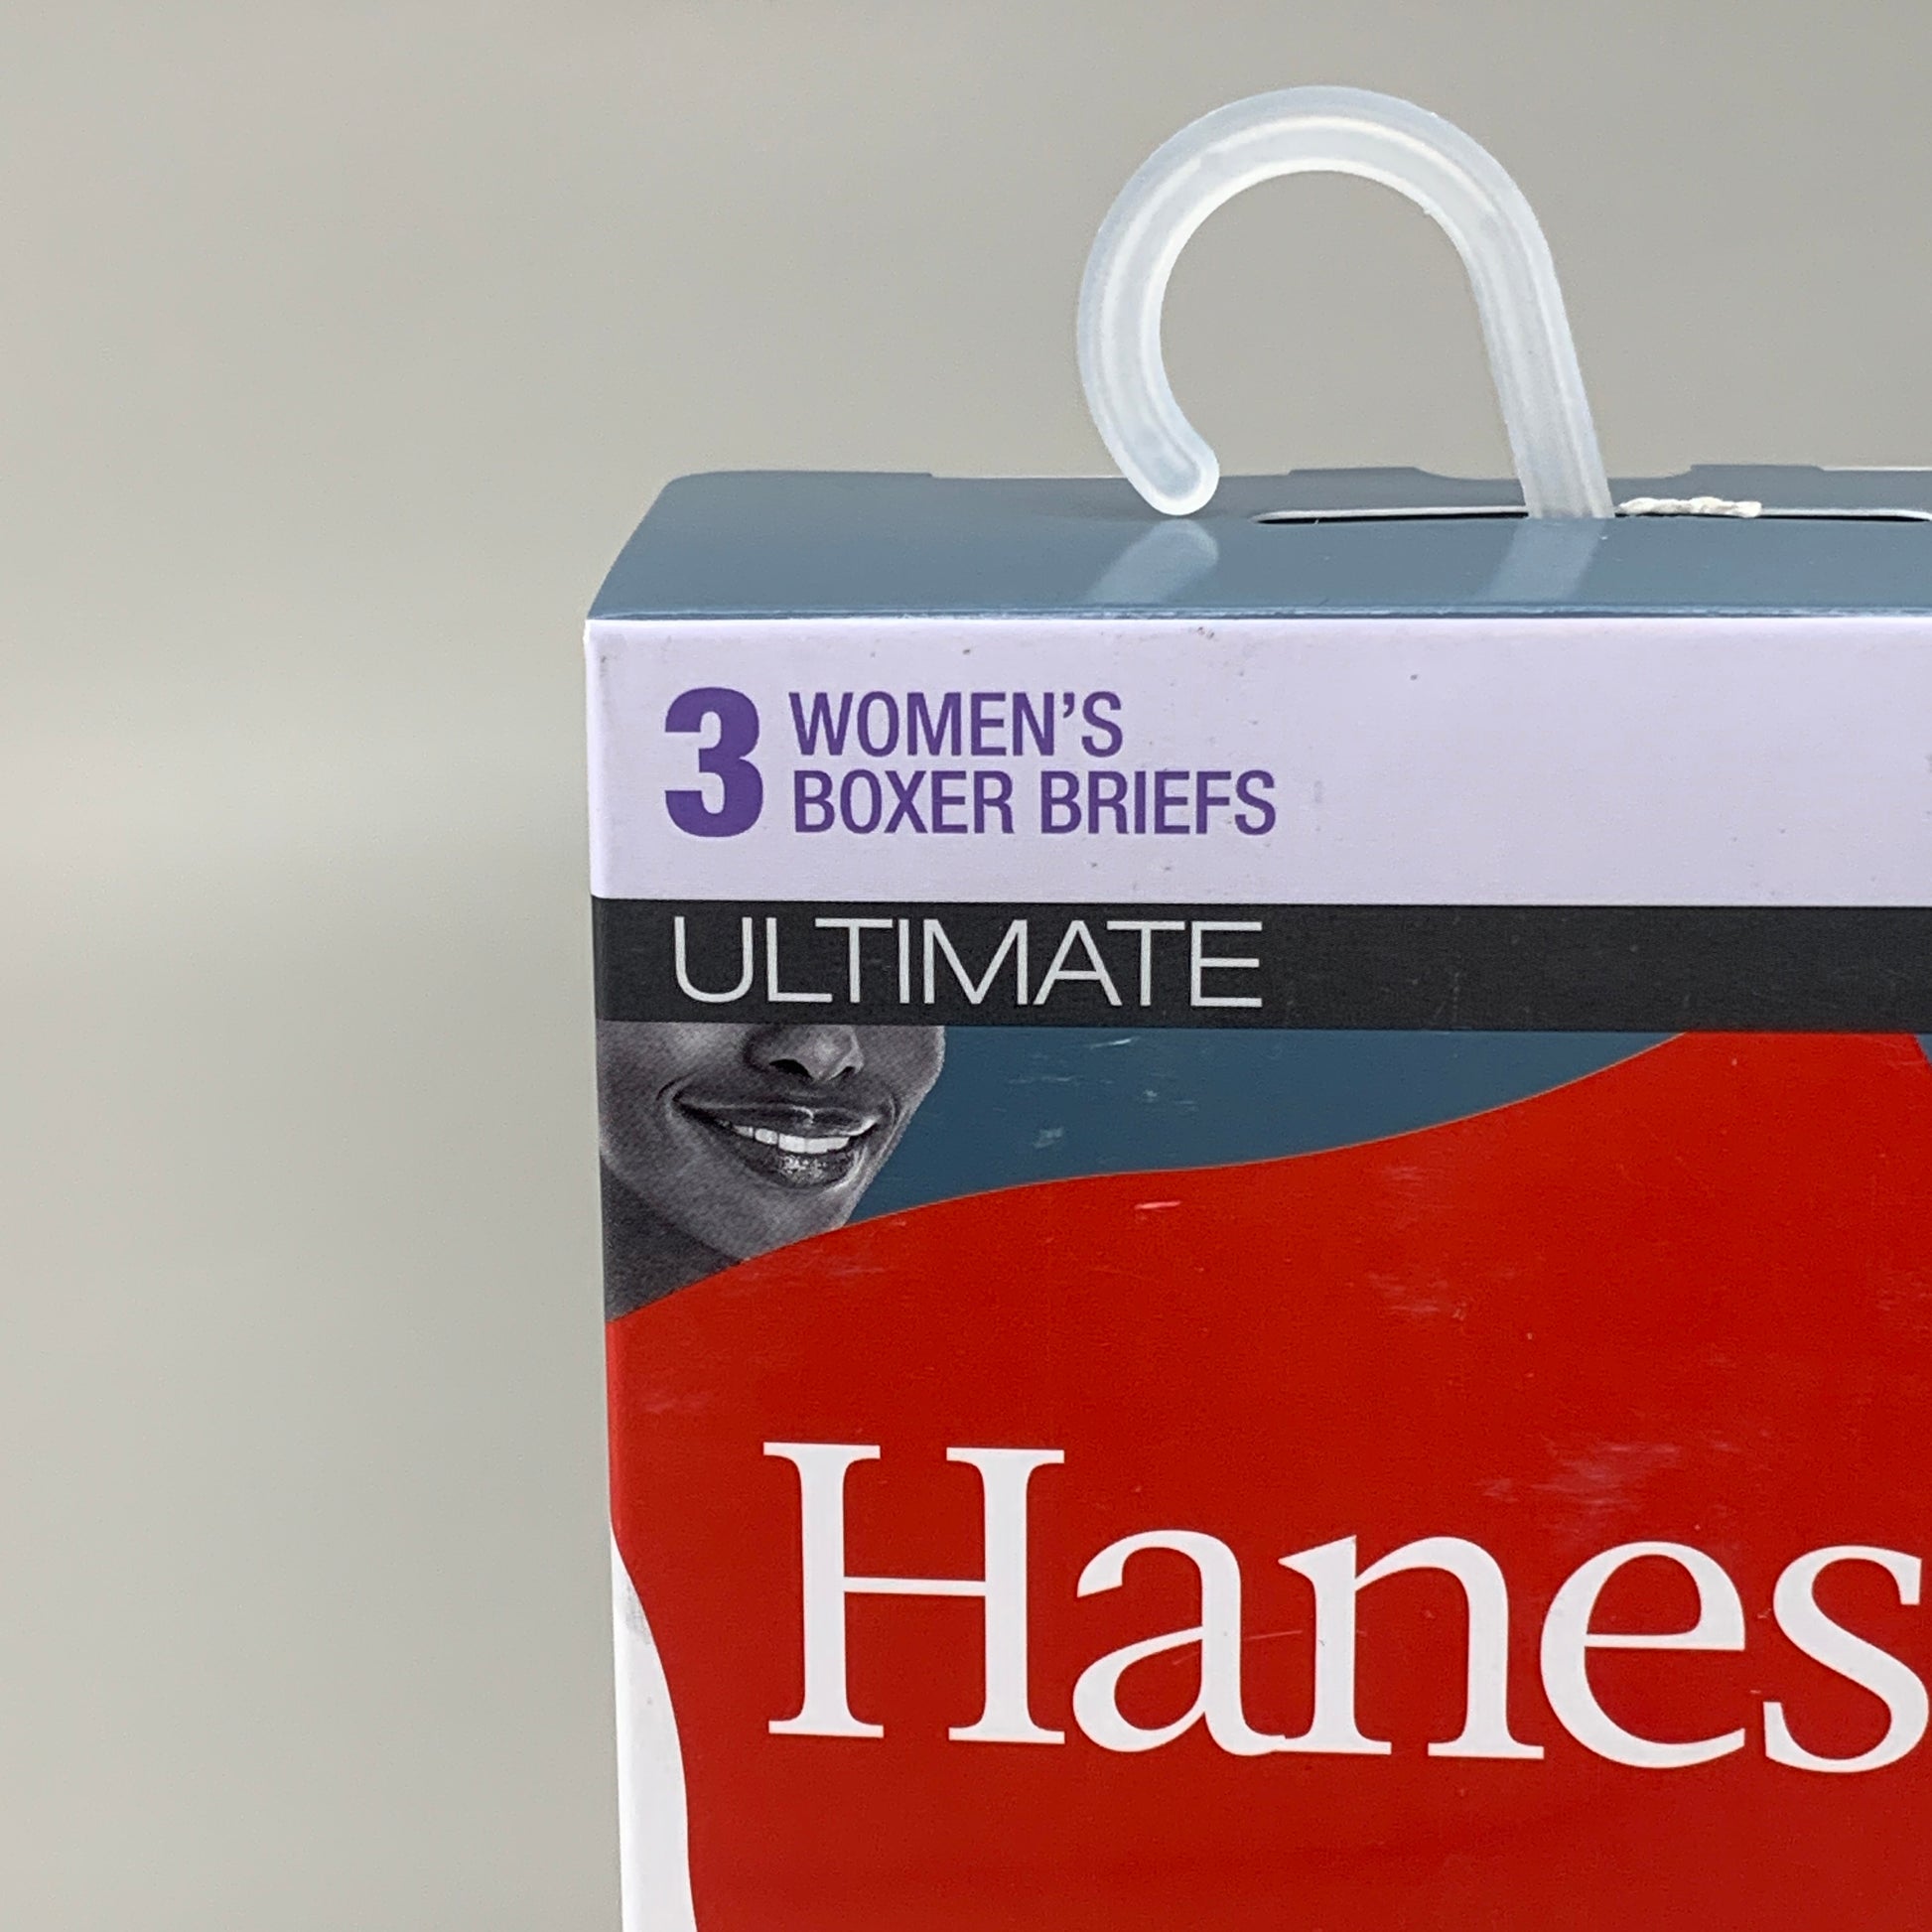 HANES 3 PACK! Originals Women's Breathable Cotton Boxer Briefs